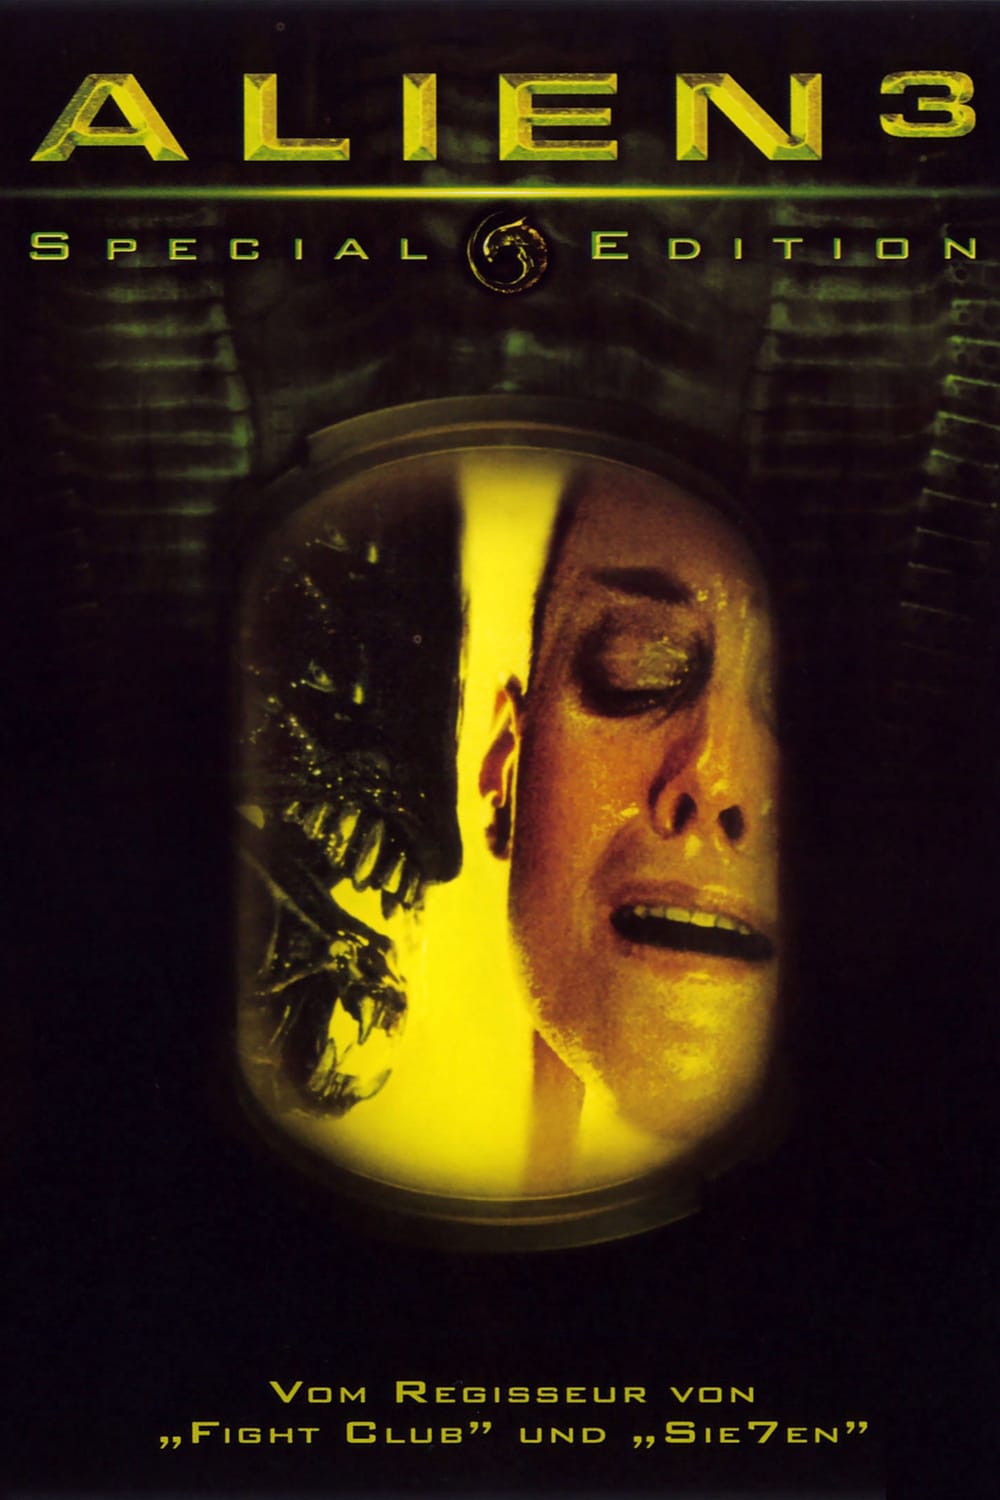 Plakat von "Alien 3"